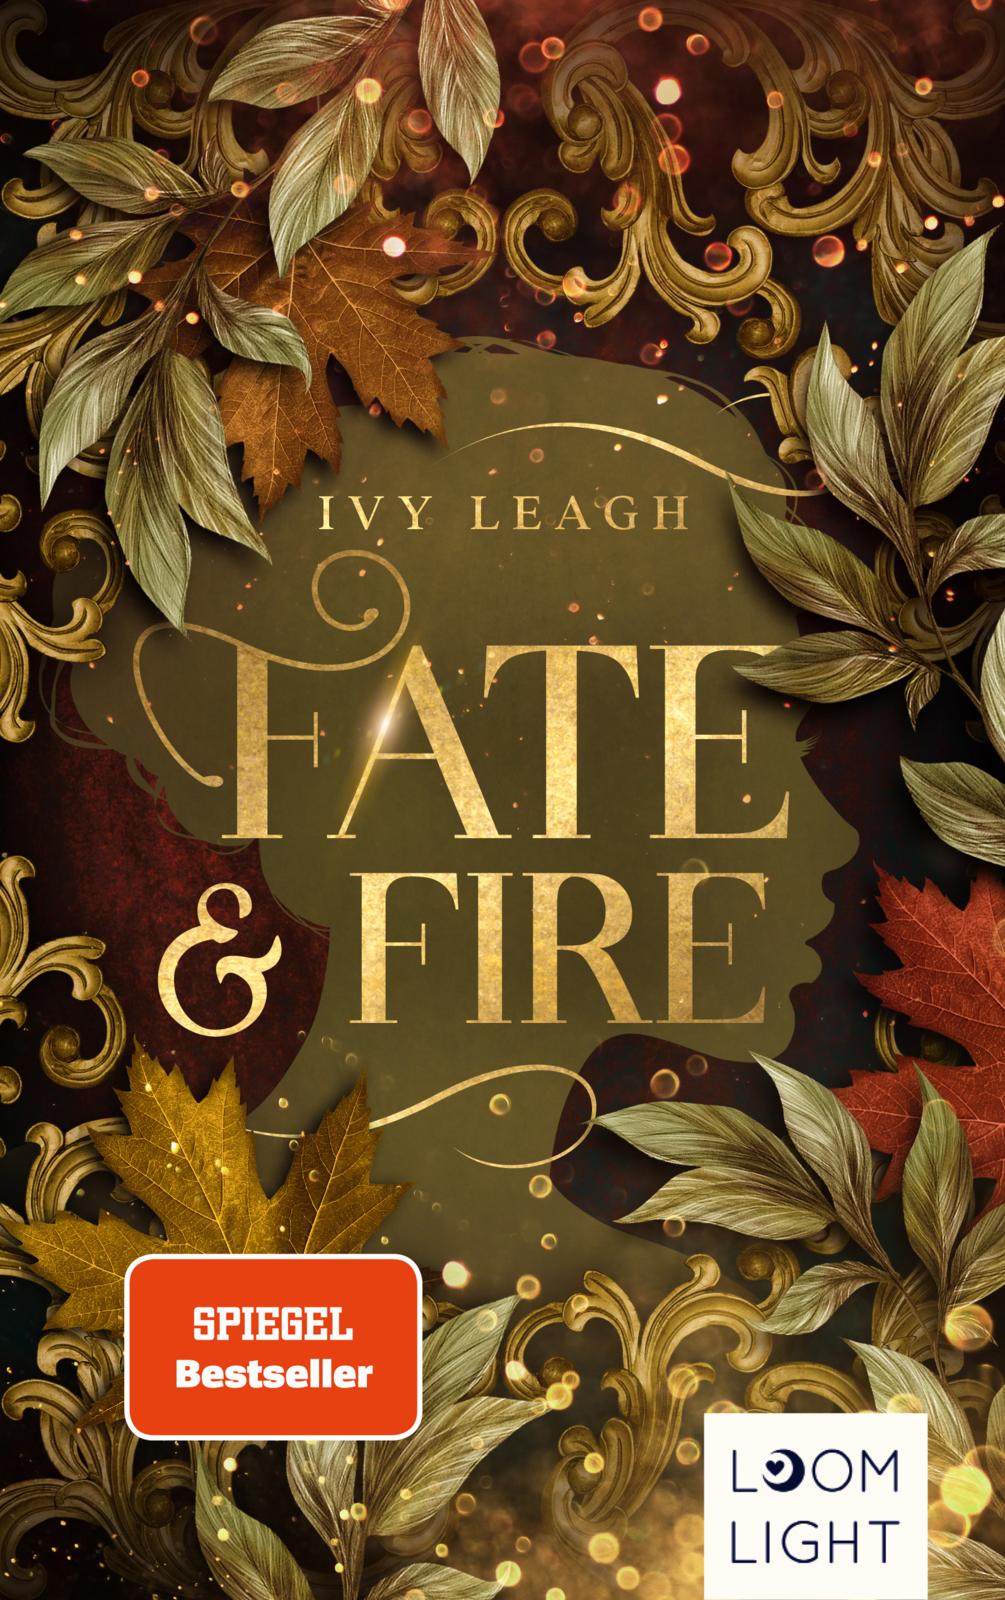 Bücherblog. Neuerscheinungen. Buchcover. Fate and Fire (Band 1) von Ivy Leagh. Jugendbuch. Fantasy. Loomlight.